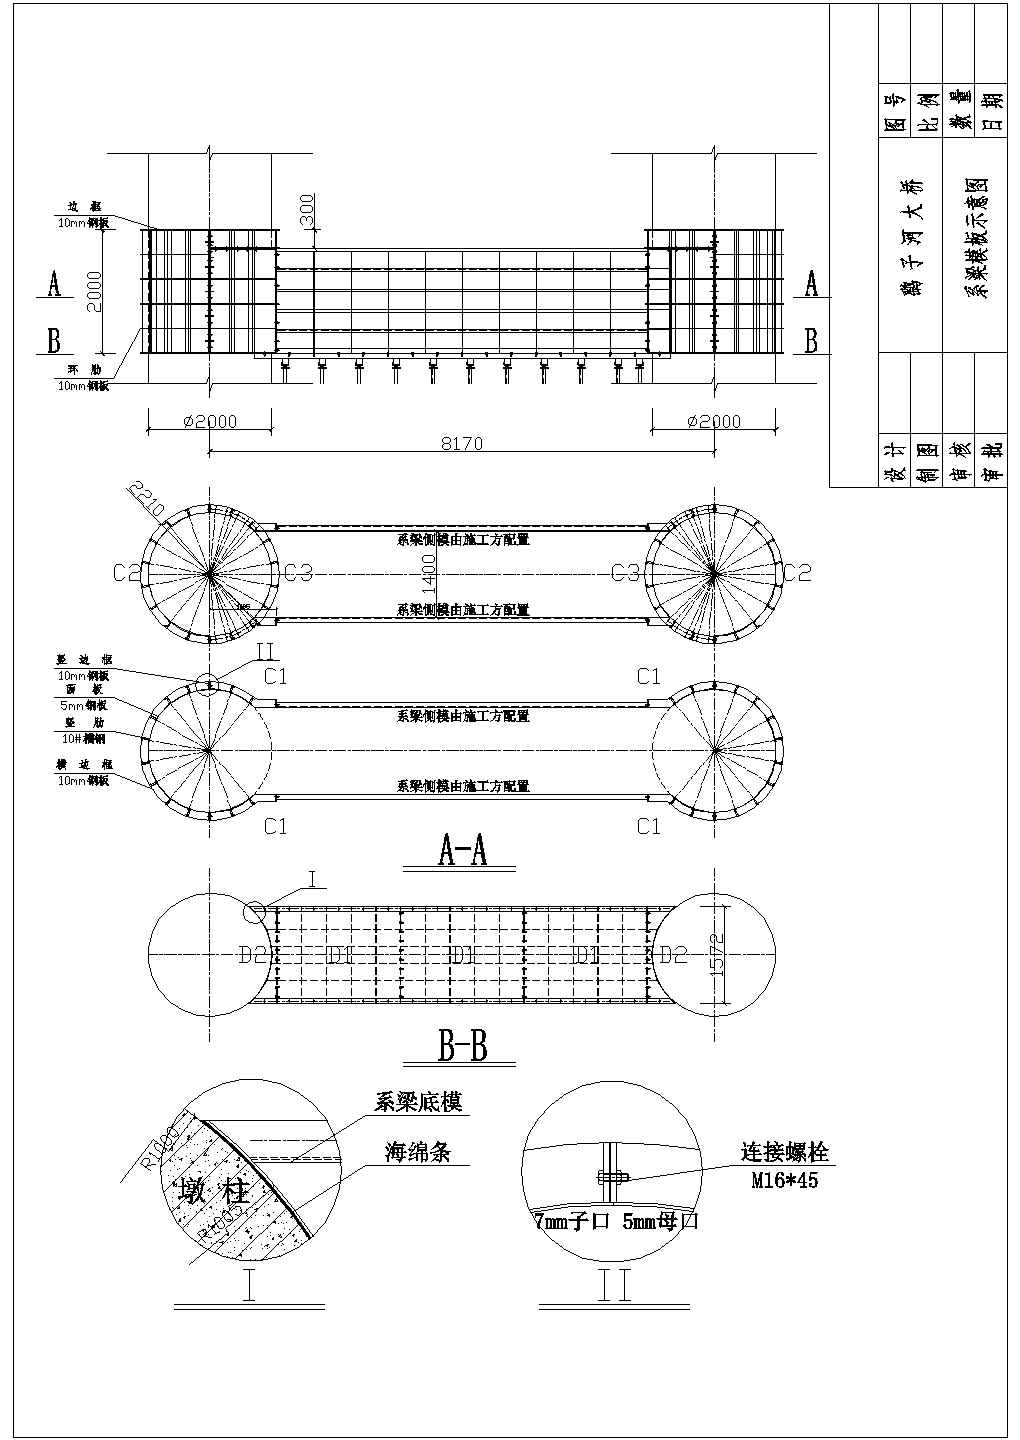 鹞子河大桥工程墩柱系梁模板设计图